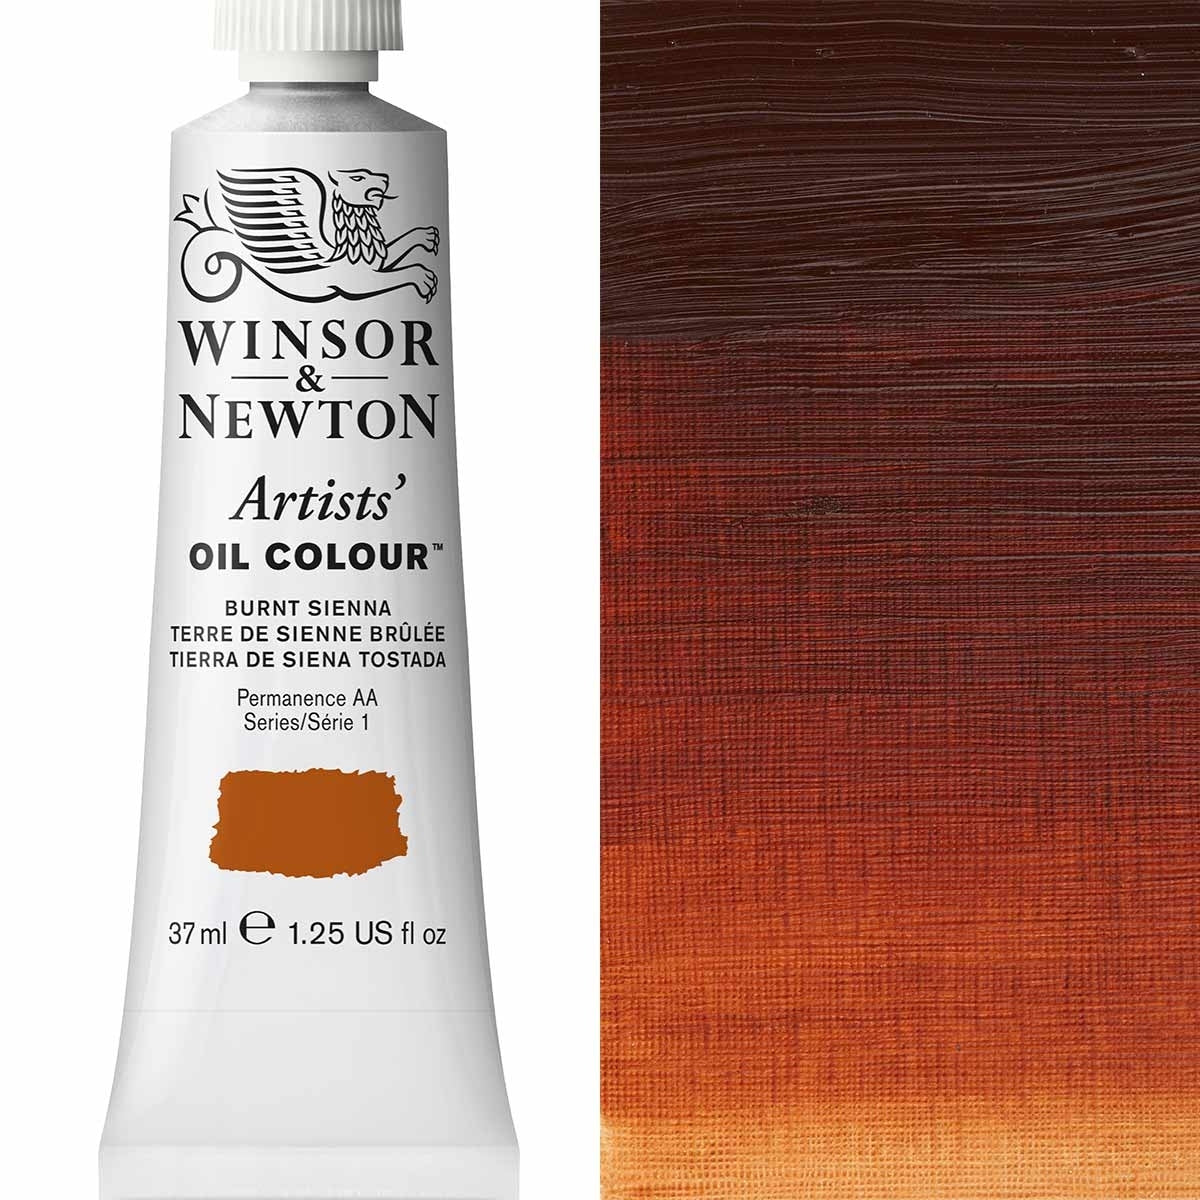 Winsor e Newton - Colore olio degli artisti - 37ml - Siena bruciata